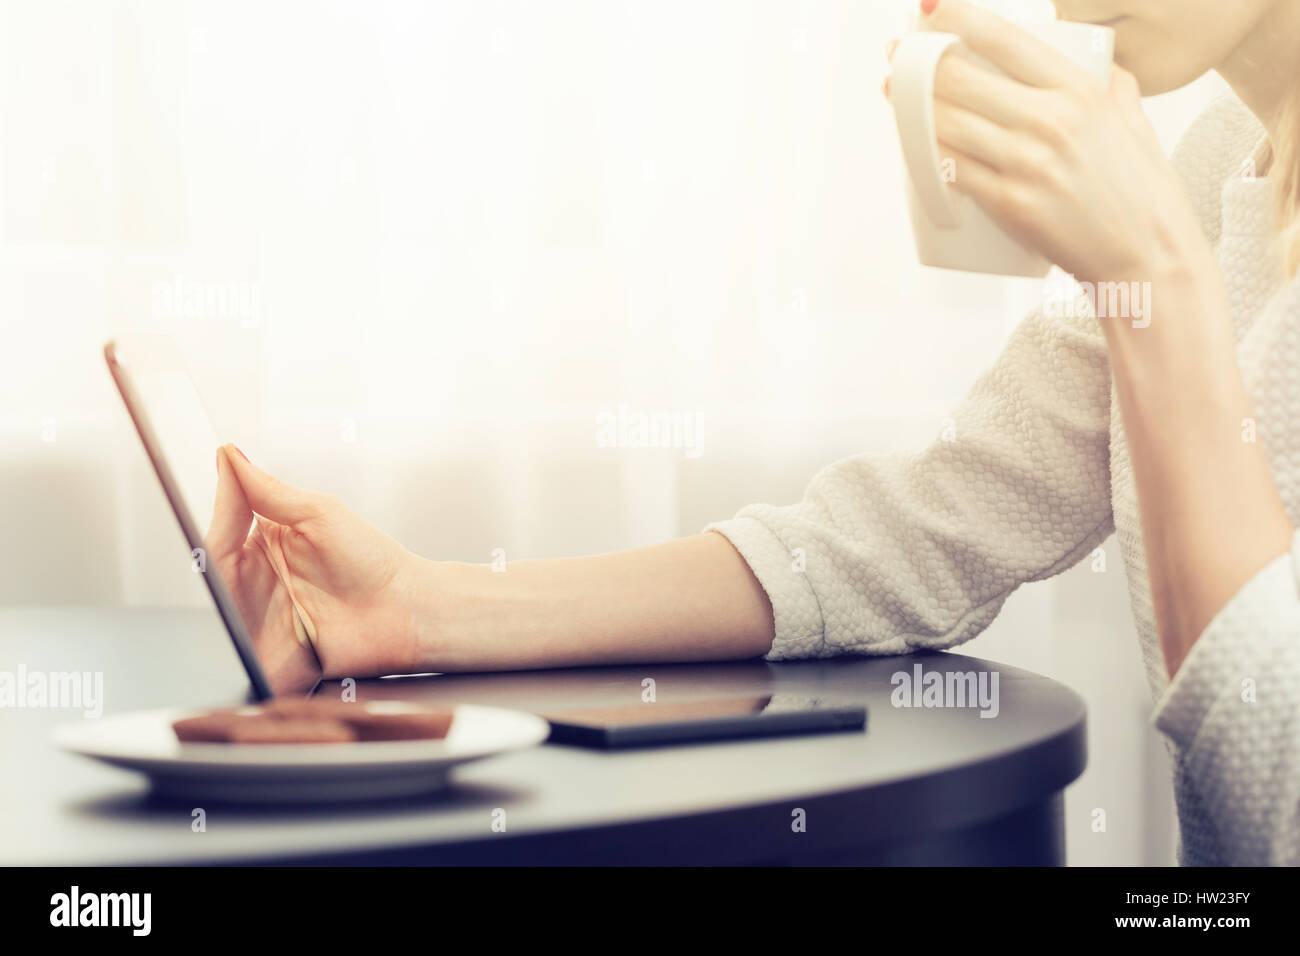 Femme buvant du café et using digital tablet Banque D'Images